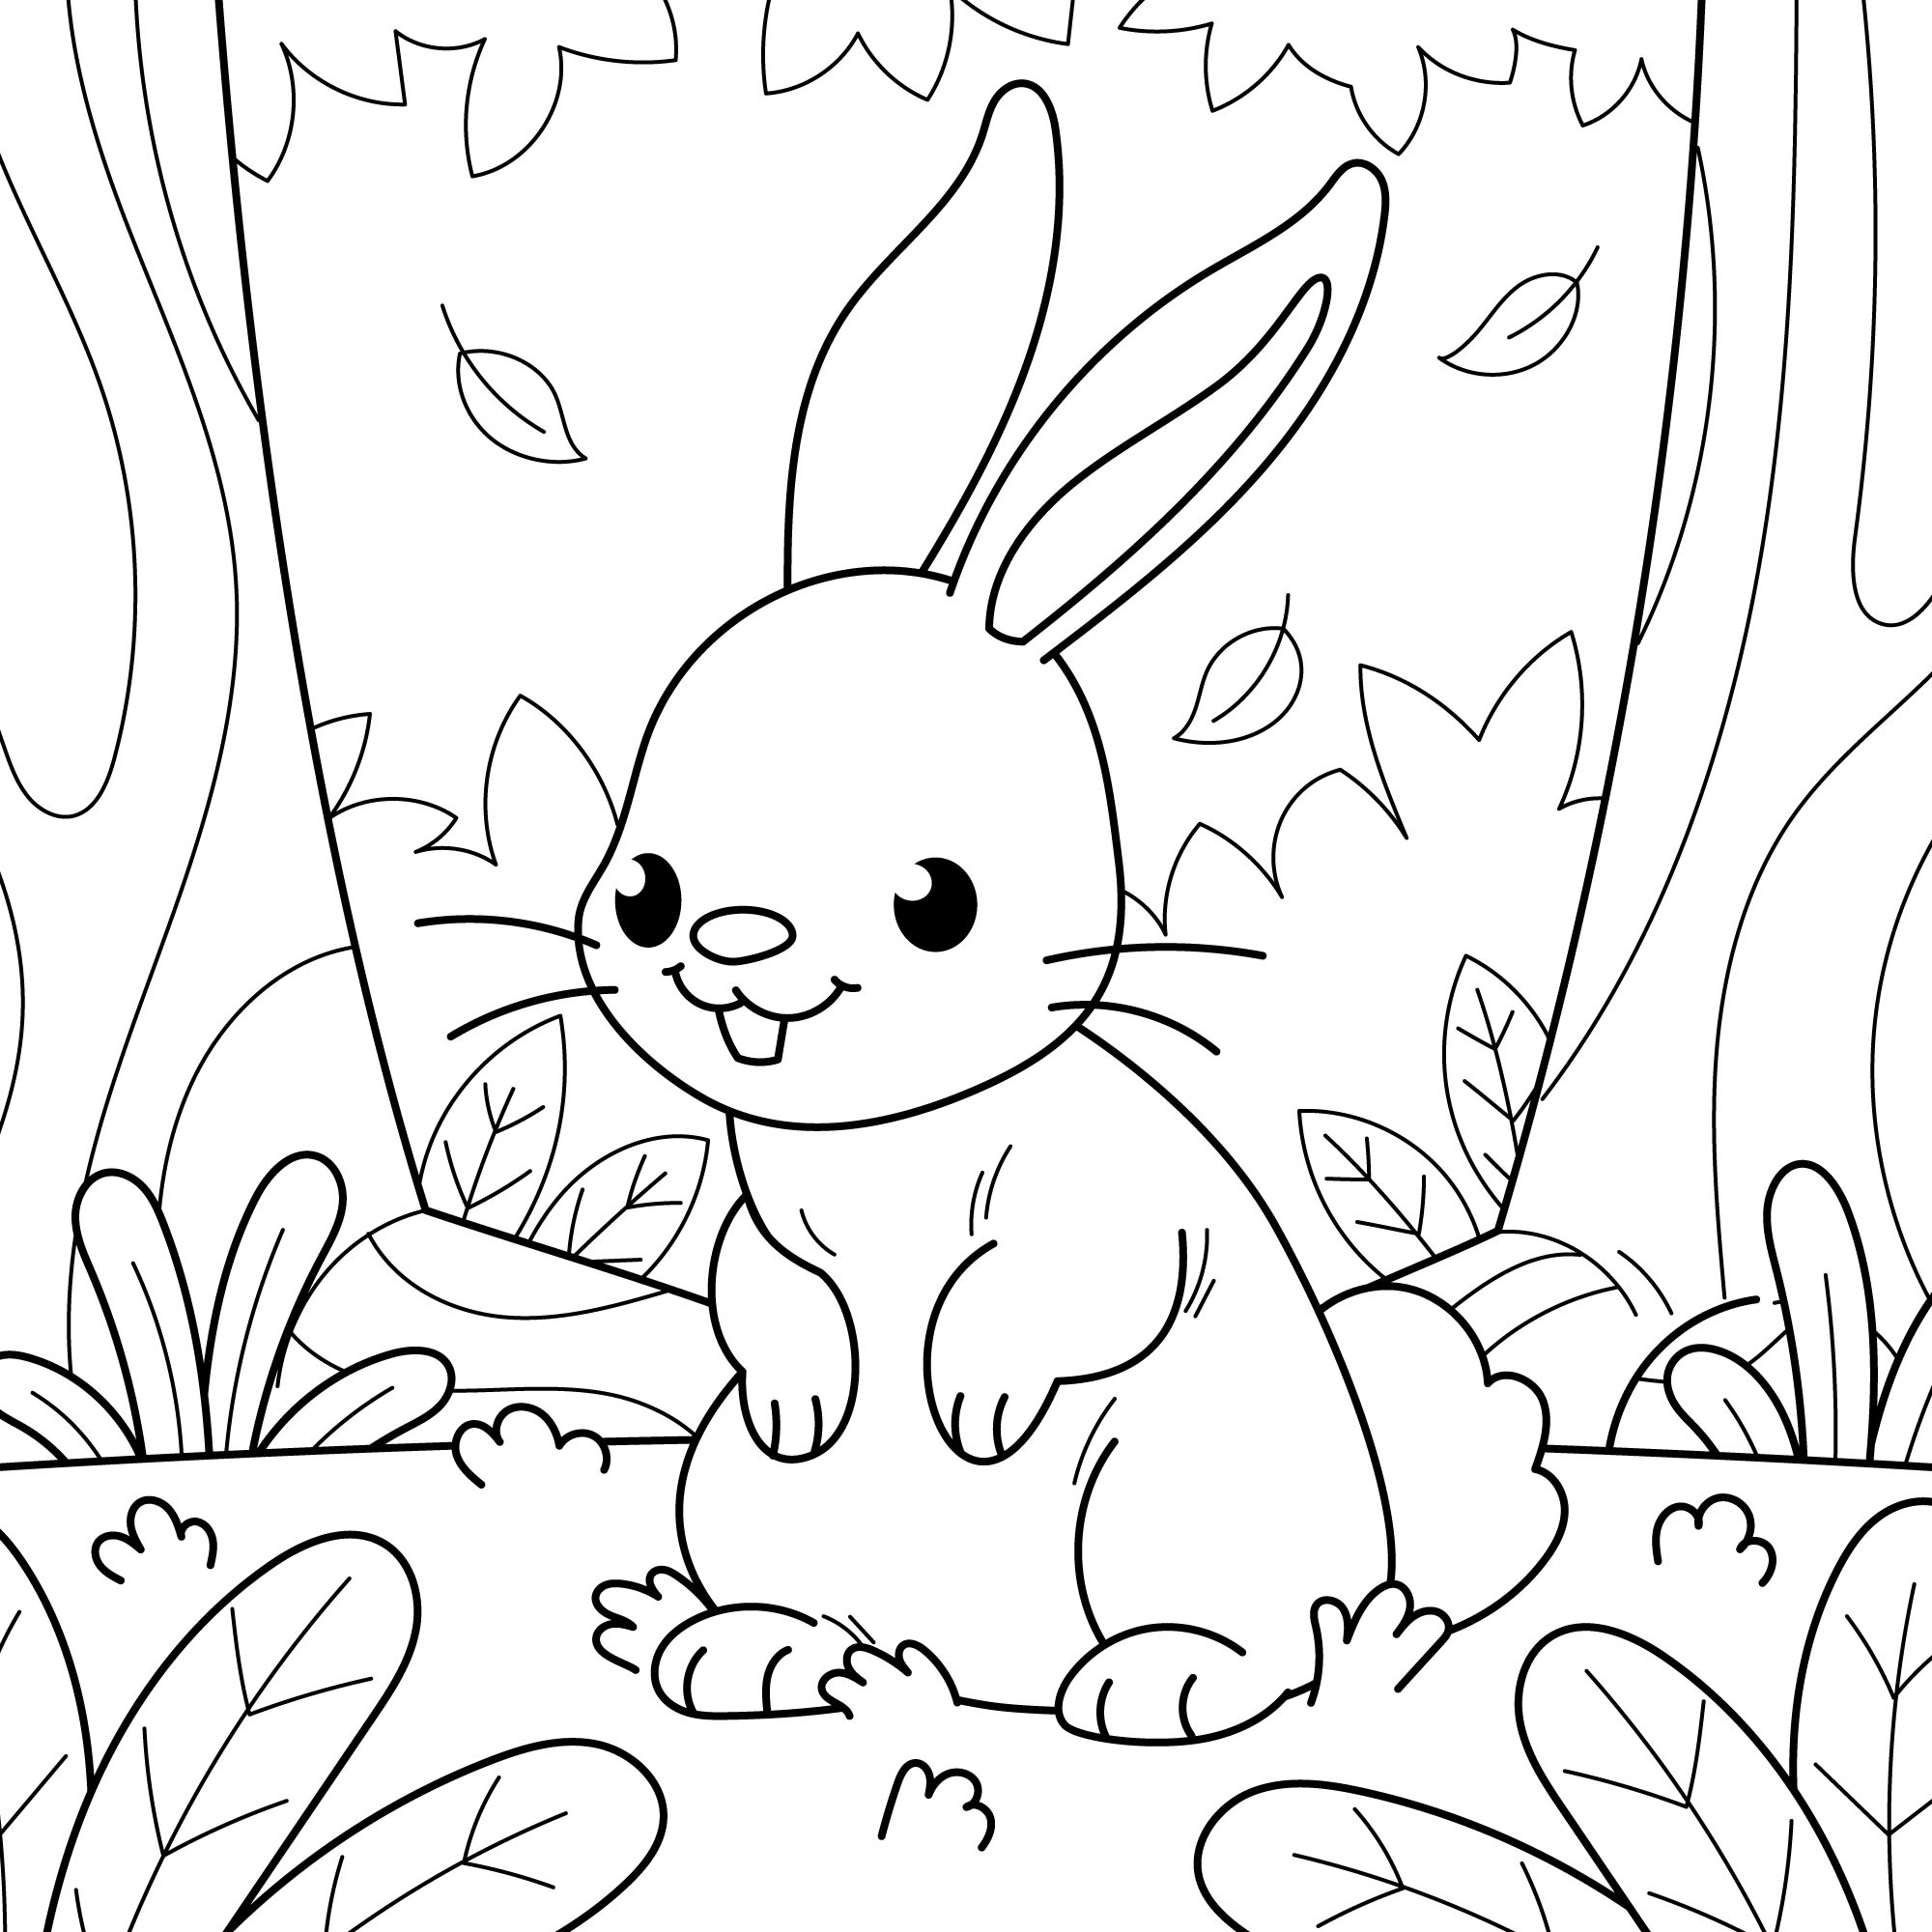 Раскраска для детей: шустрый заяц в лесу